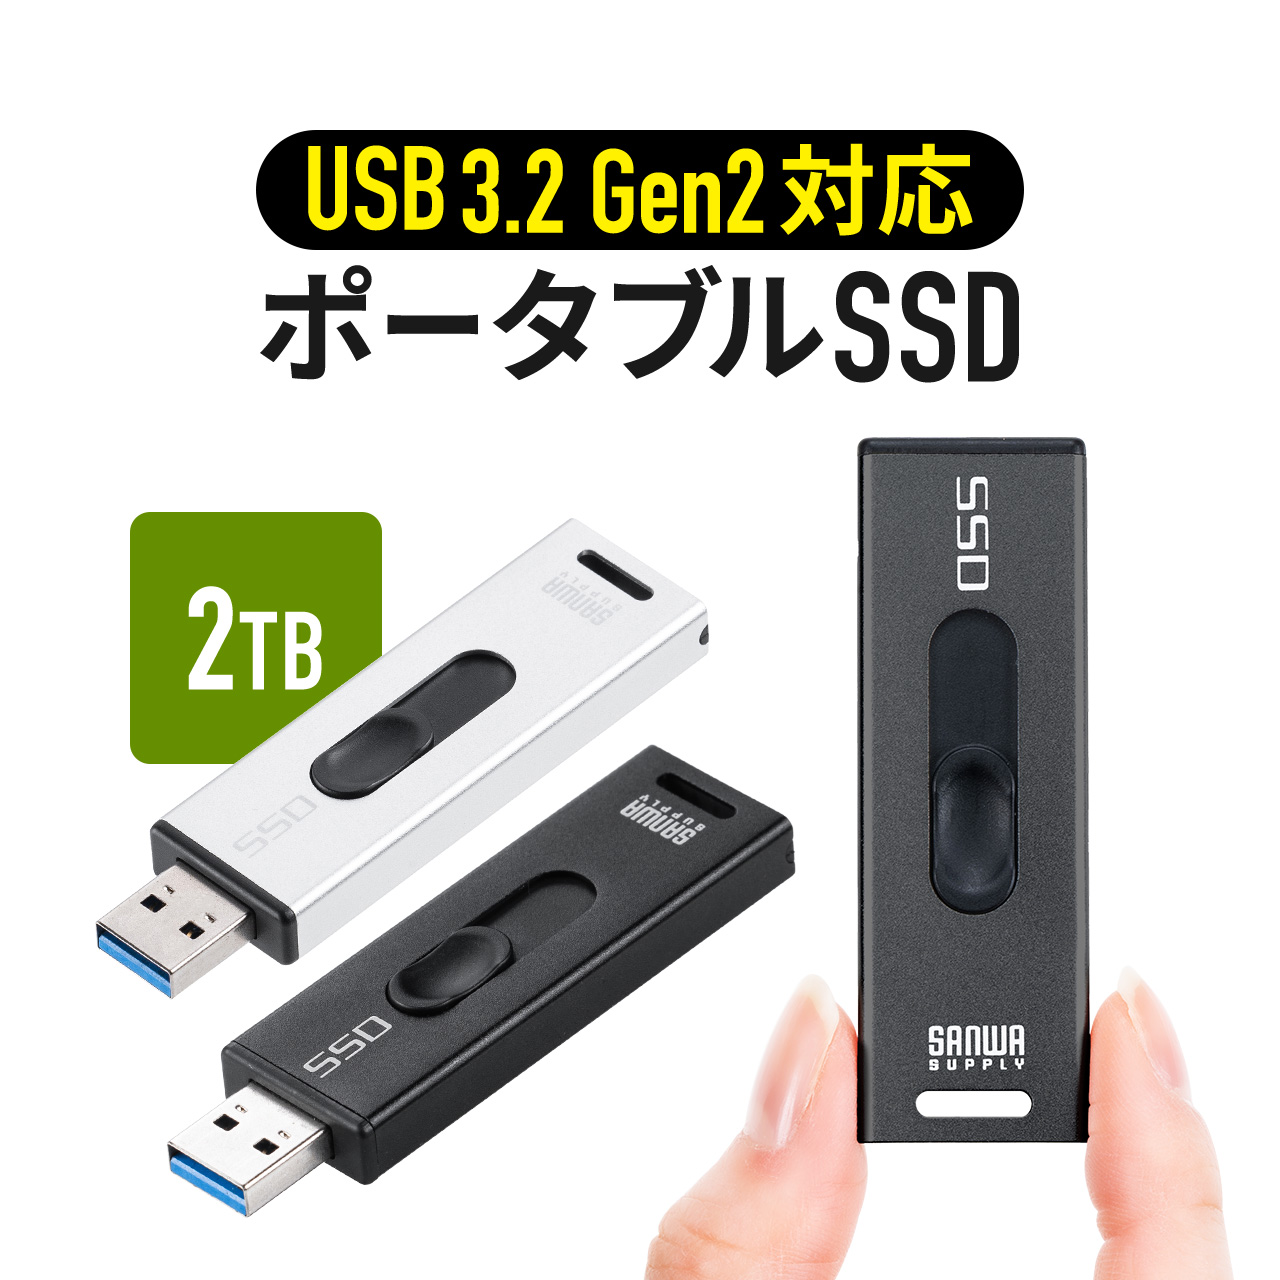 スティック型SSD 2TB 外付け ポータブルSSD テレビ録画 TV録画用 超小型 USB3.2(Gen2) ゲーム機 PS5 PS4 スライド式 直挿し 高速 データ転送 600-USSD2TBS